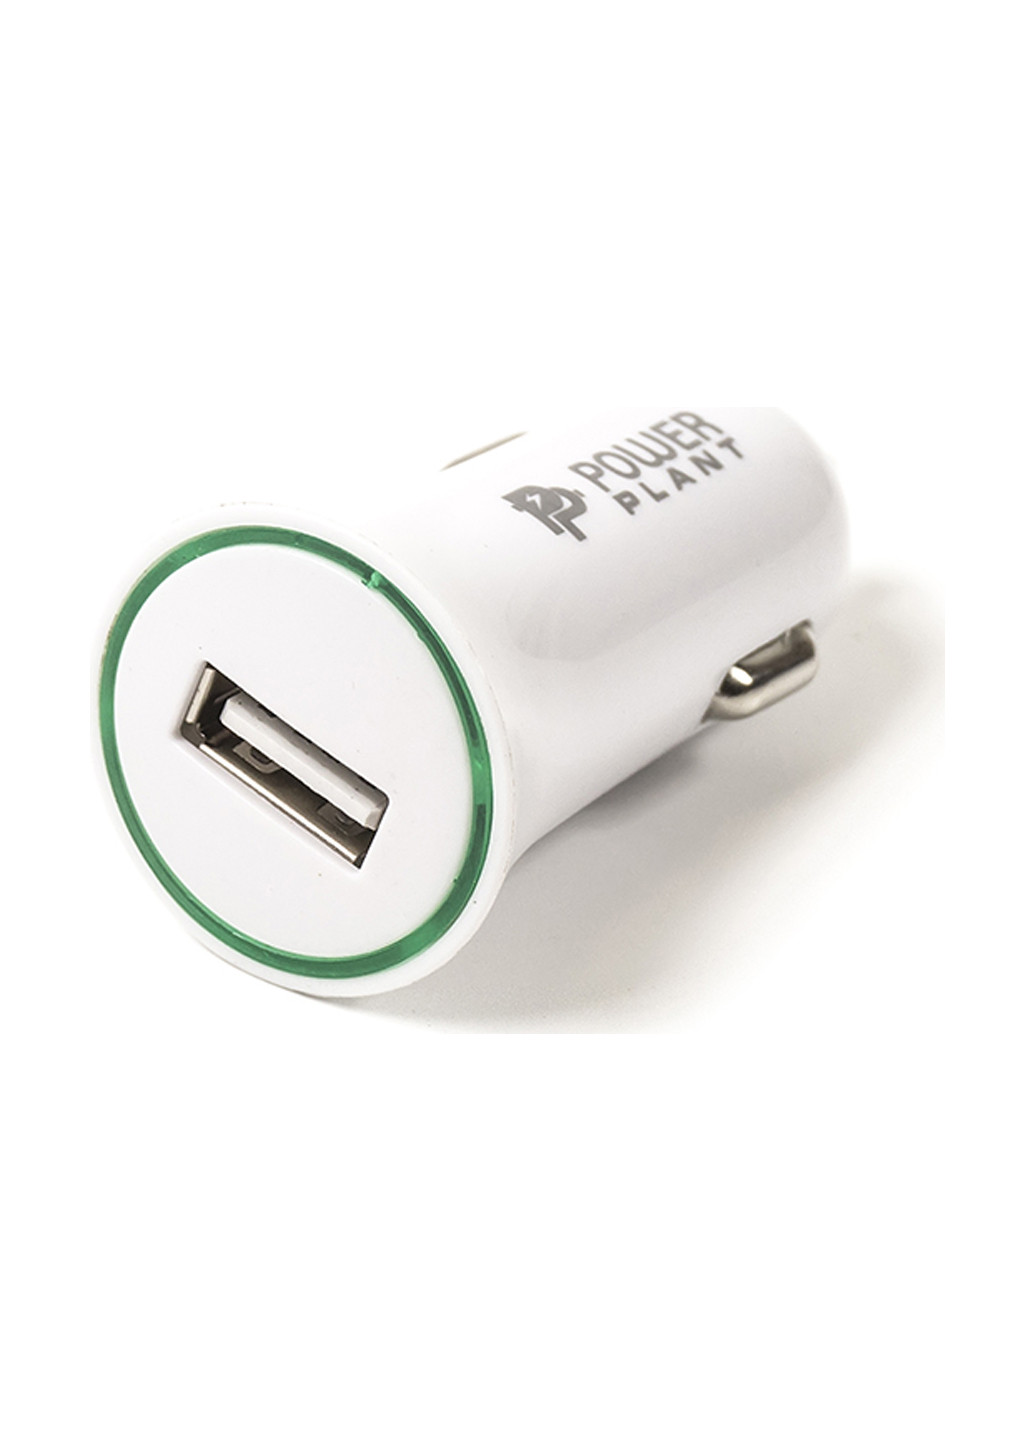 Автомобильное зарядное USB-устройство 2.1A PowerPlant автомобильное 2.1a (153984702)